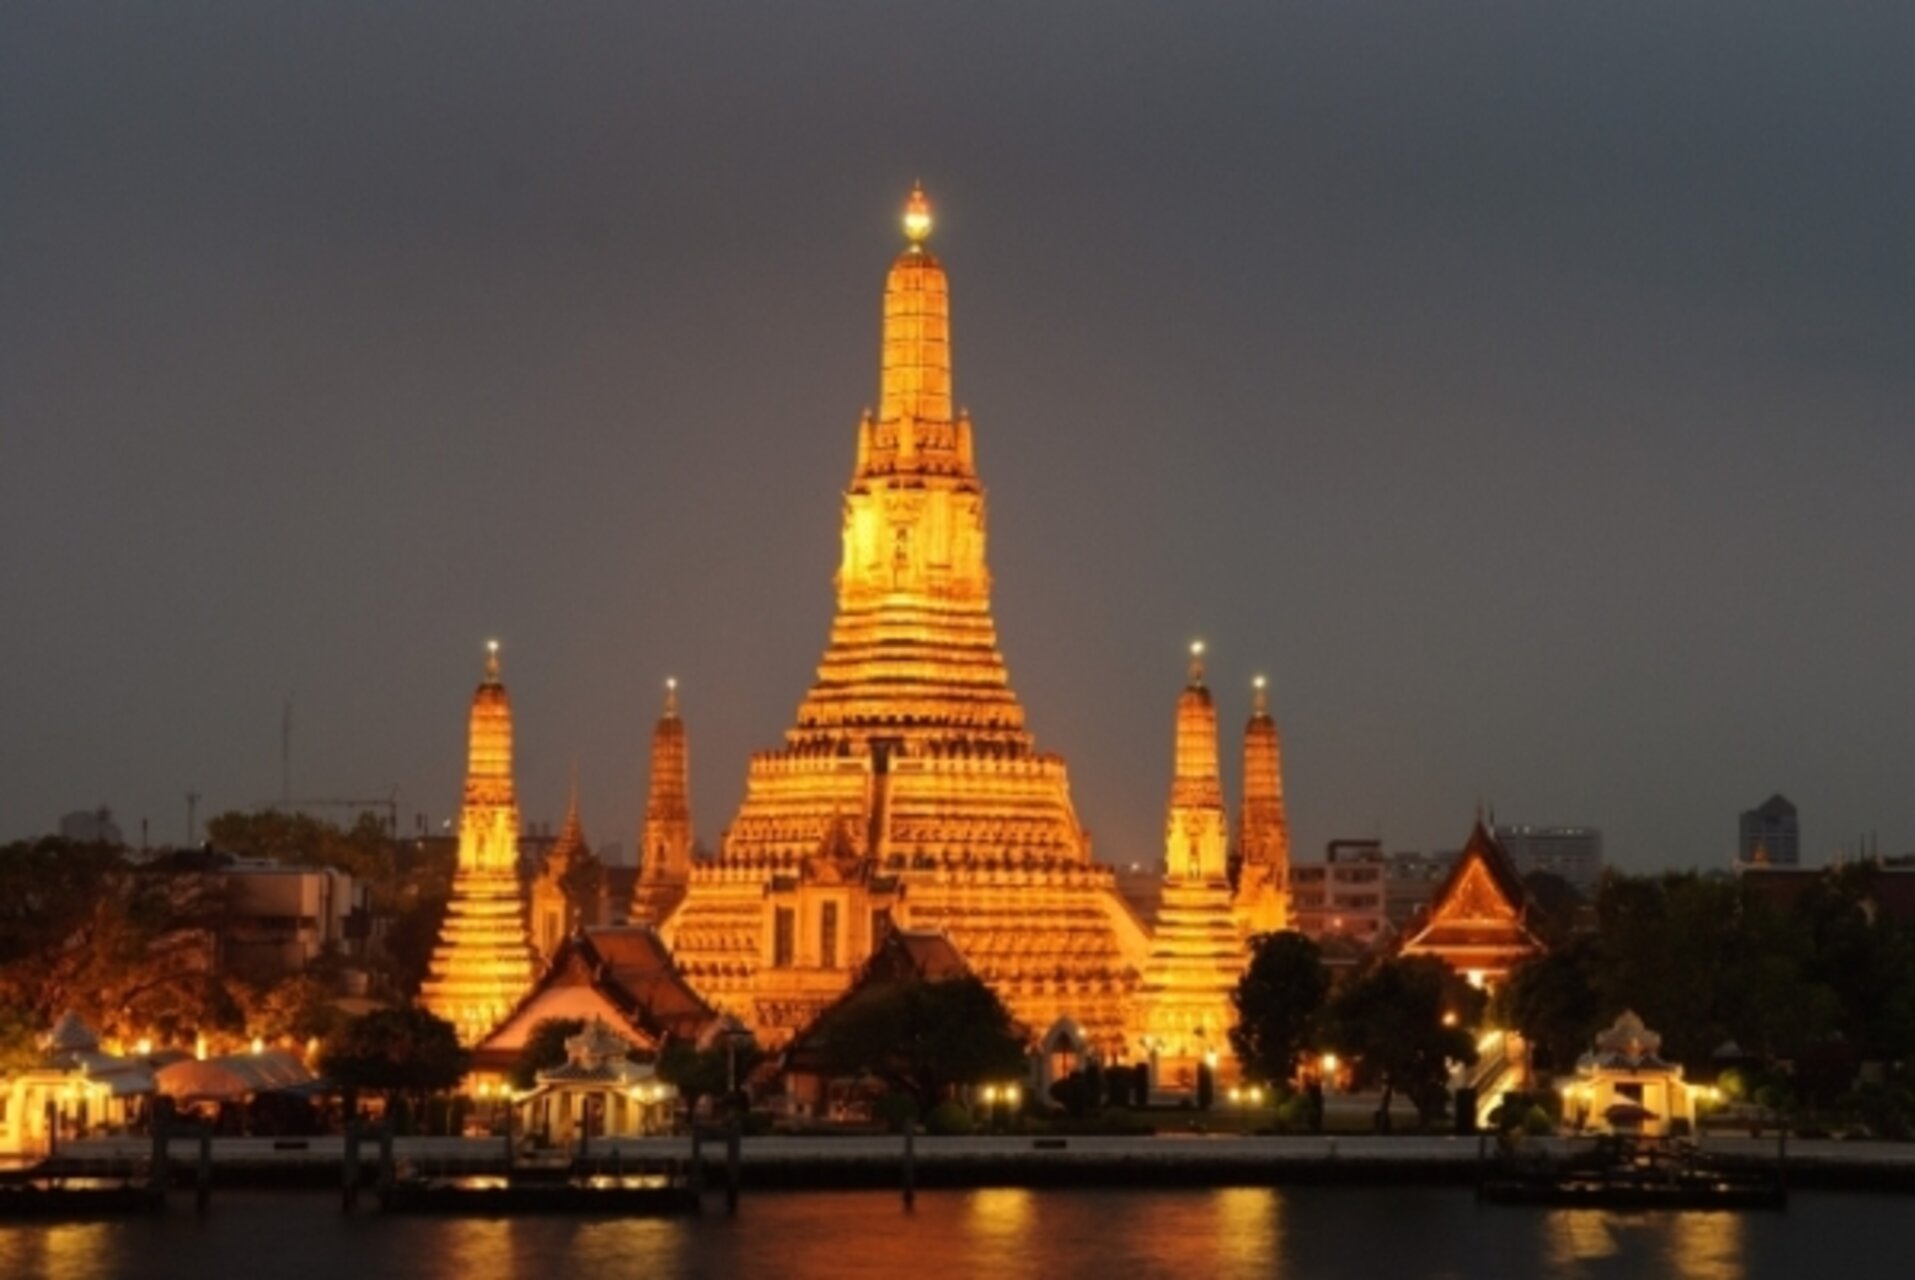 Ват Арун (тайск. วัดอรุณ, храм рассвета) — буддийский храм в Бангкоке, Таиланд. Расположен на западном берегу реки Чаупхрая. Известен своей 79-метровой пагодой, украшенной керамической плиткой и разноцветным фарфором.
http://ru.wikipedia.org/wiki/%D0%92%D0%B0%D1%82_%D0%90%D1%80%D1%83%D0%BD Olarge